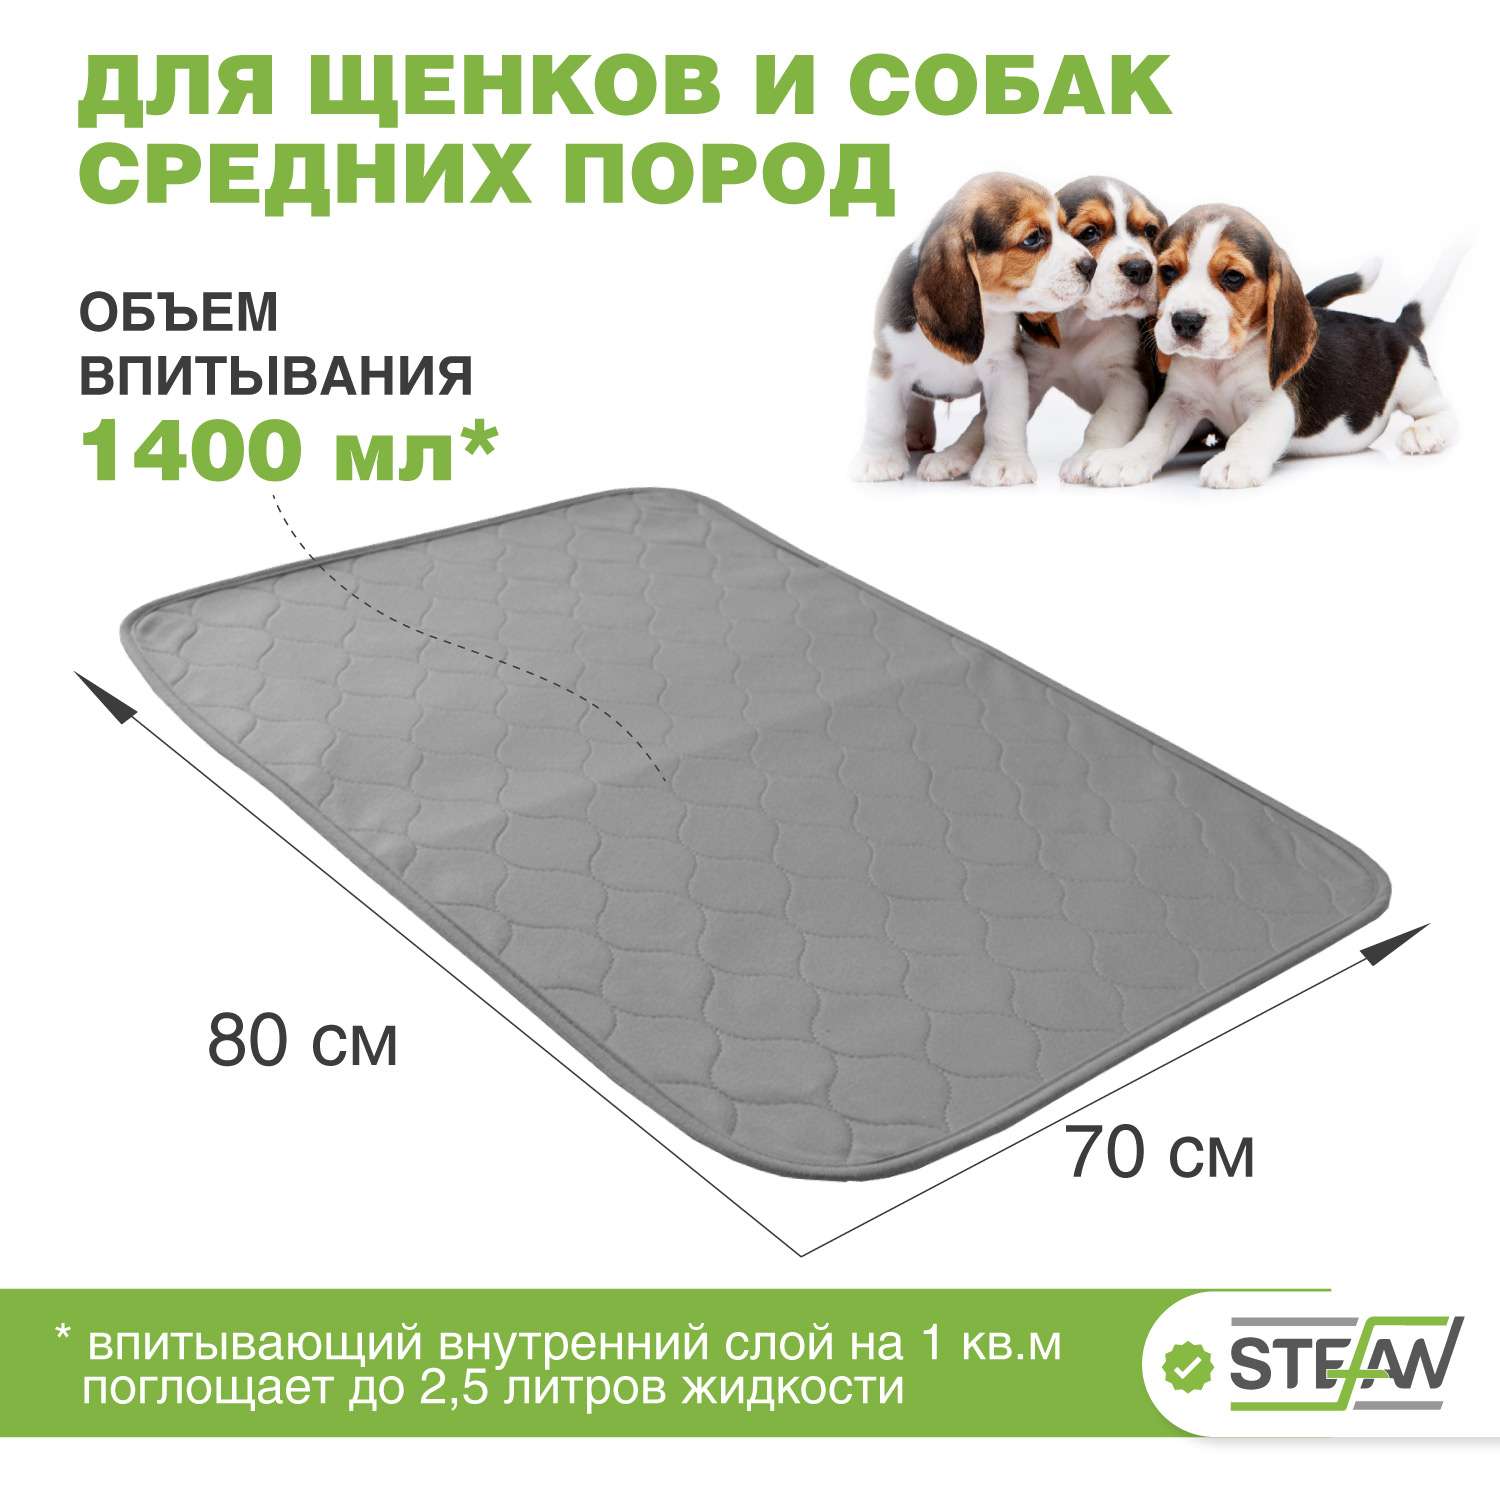 Пеленка для животных Stefan впитывающая многоразовая серая однотонная 70х80 см - фото 1